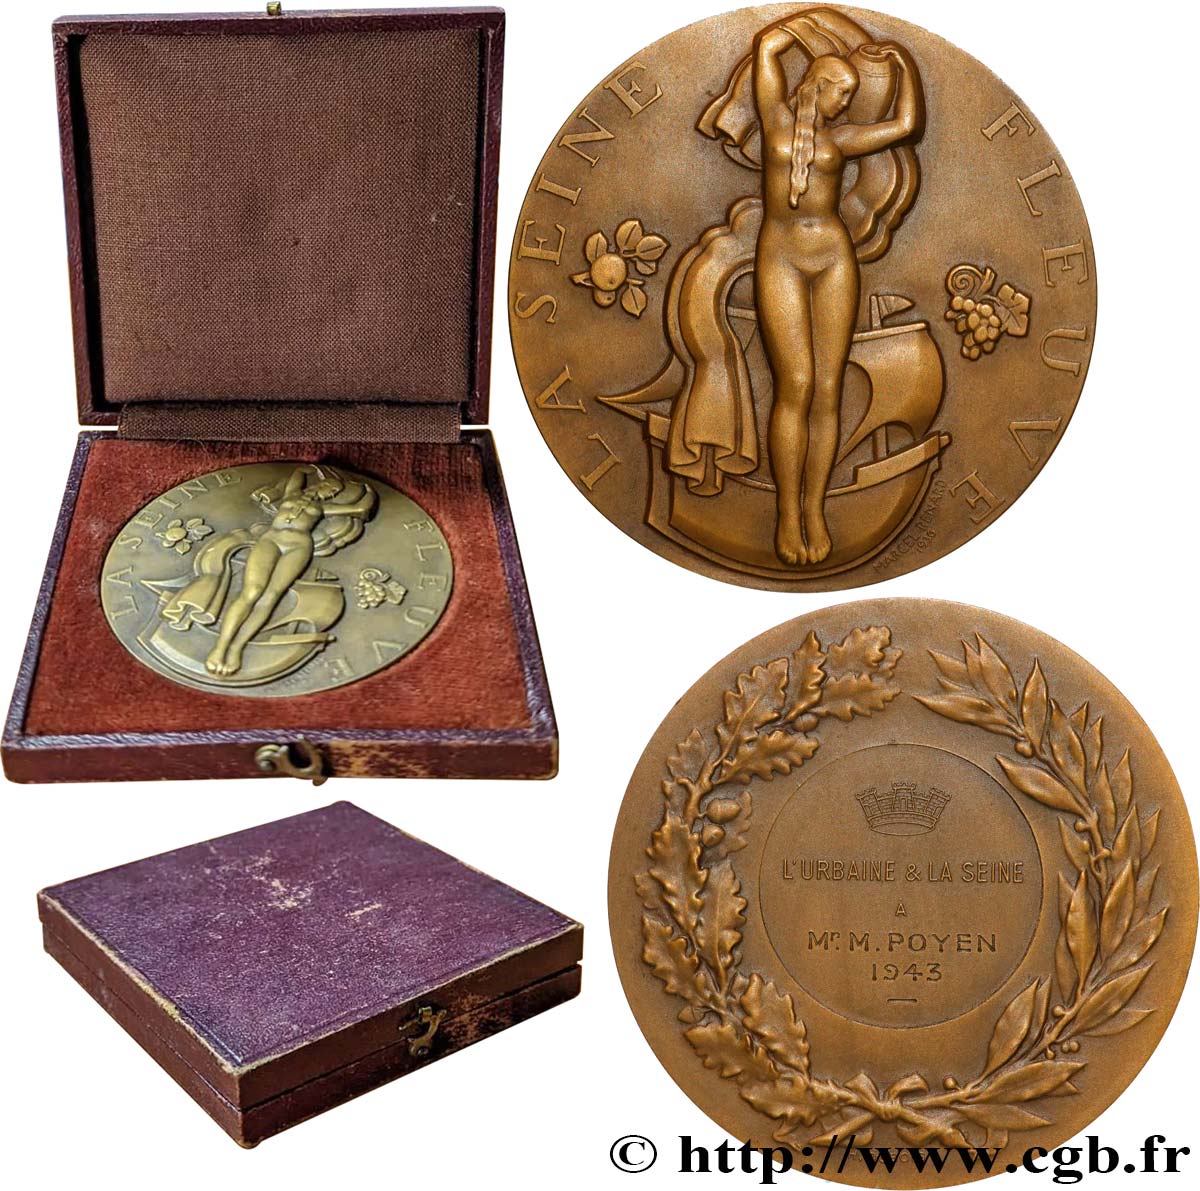 ETAT FRANÇAIS Médaille, La Seine Fleuve, L’Urbaine et la Seine SPL